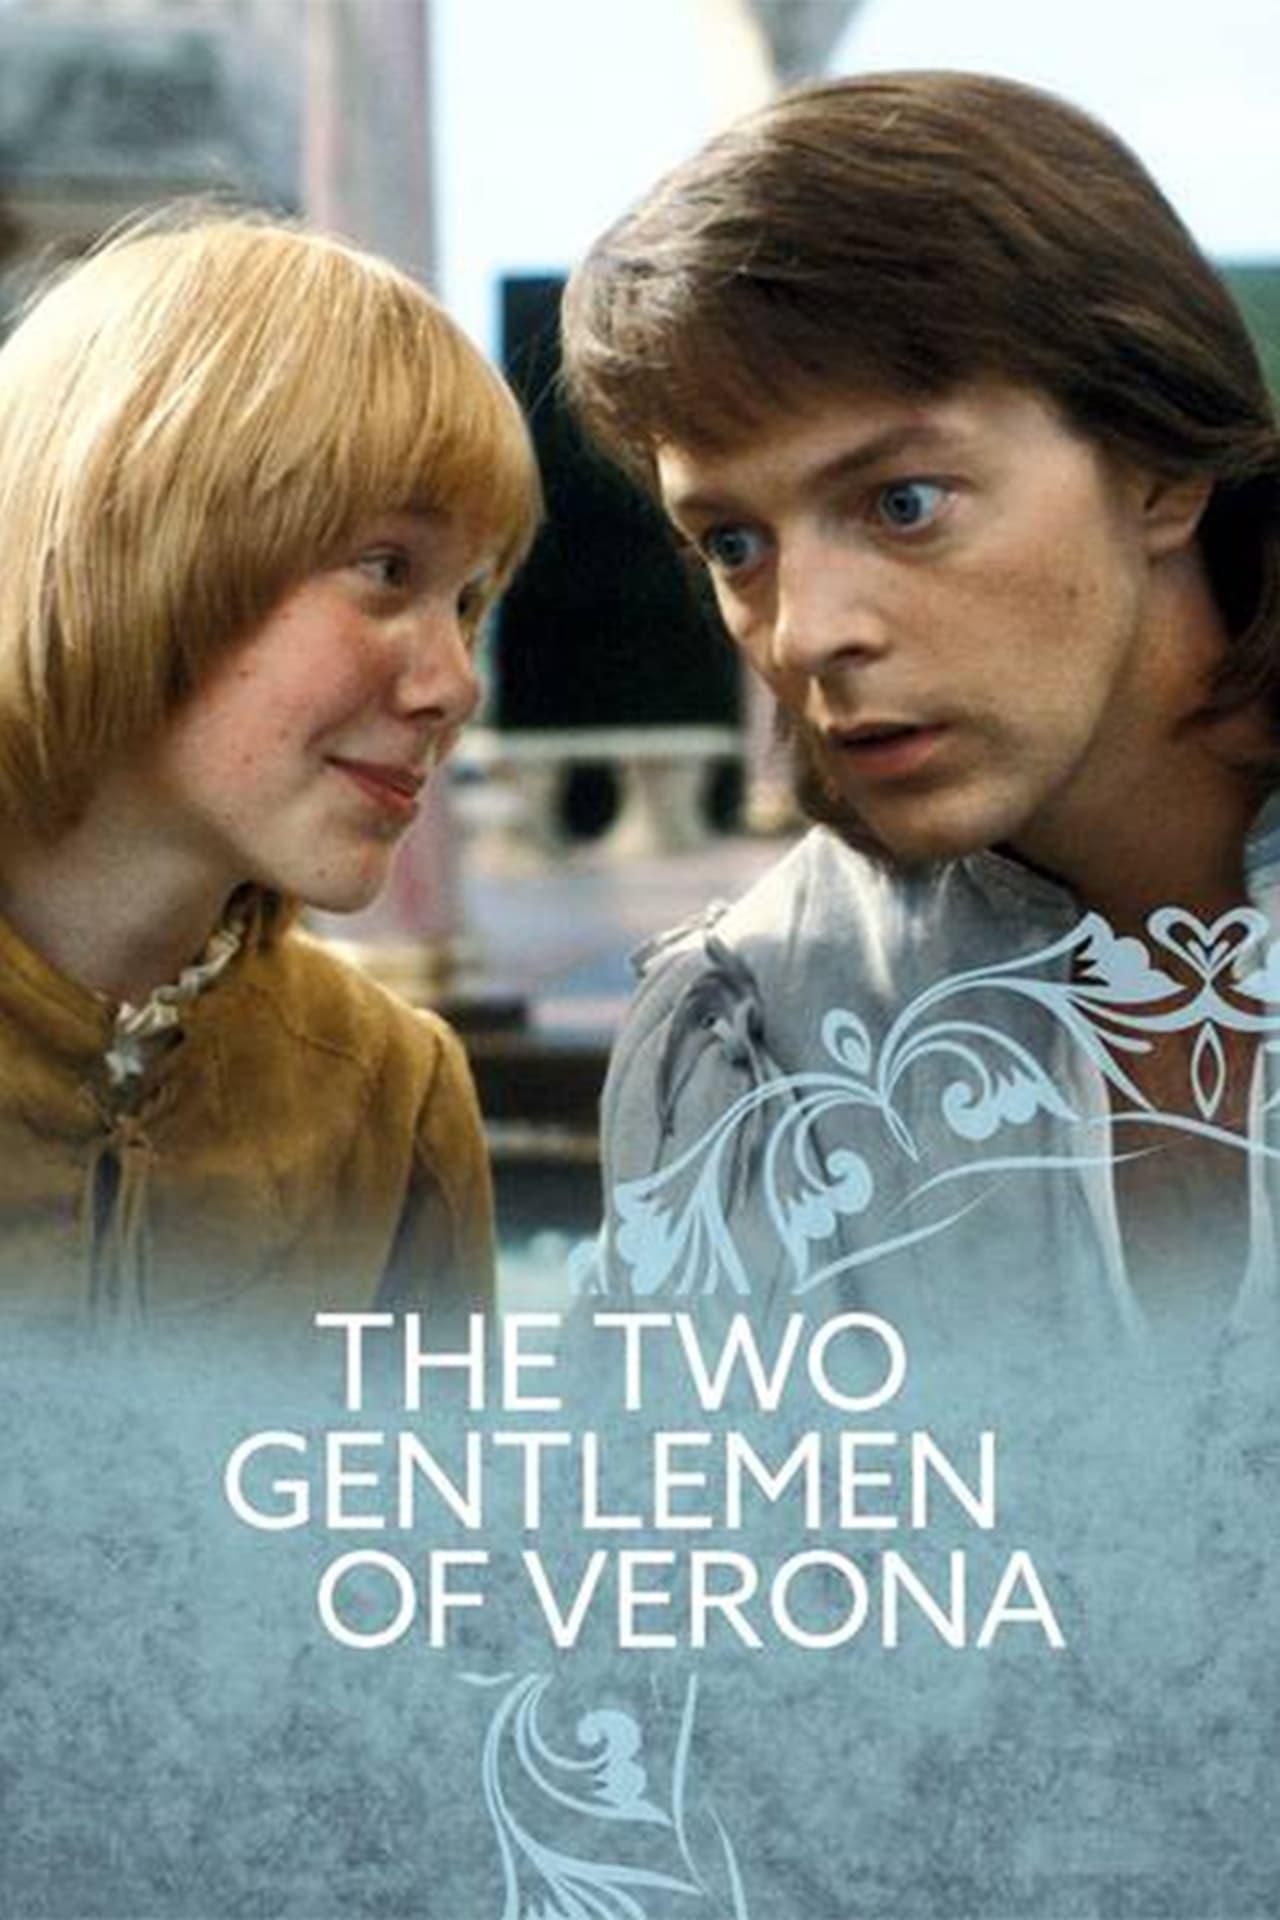 The Two Gentlemen of Verona poster